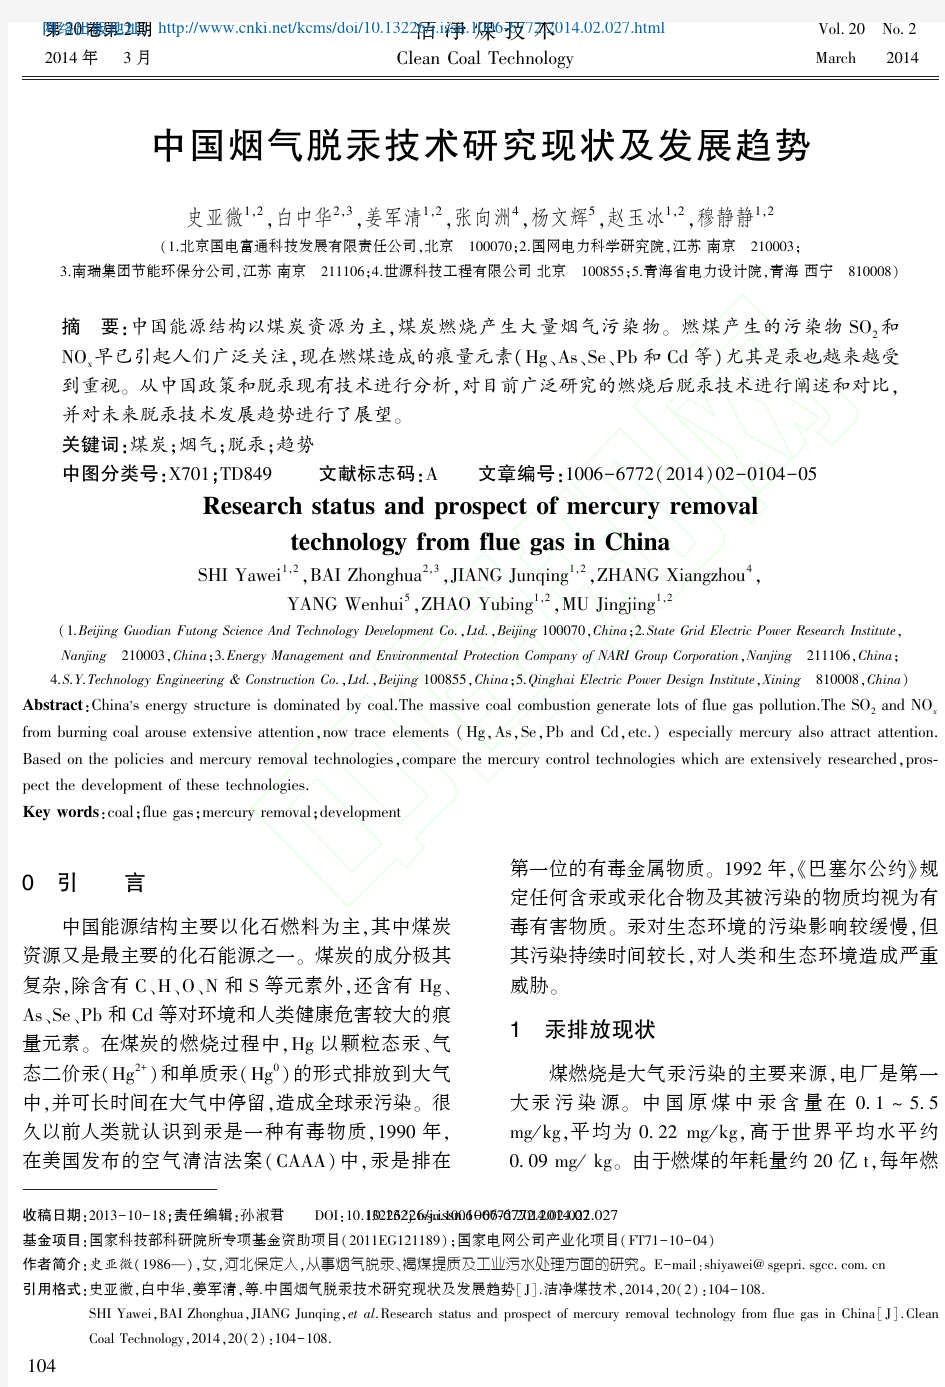 中国烟气脱汞技术研究现状及发展趋势_史亚微